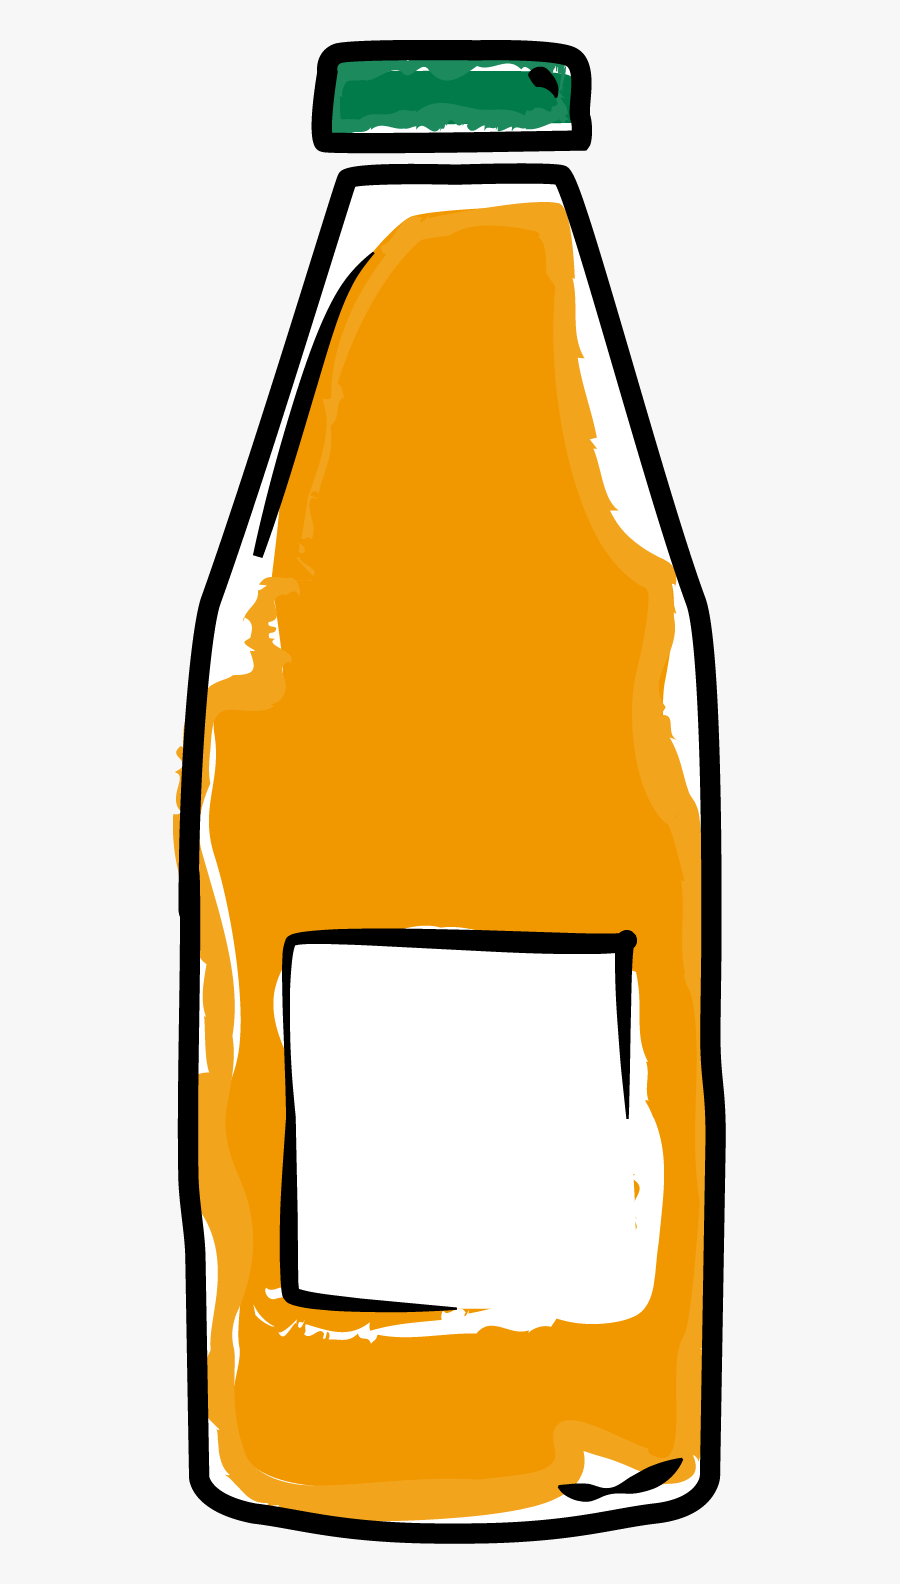 Bottle Clipart Orange Juice - Orange Juice Bottle Clipart, Transparent Clipart